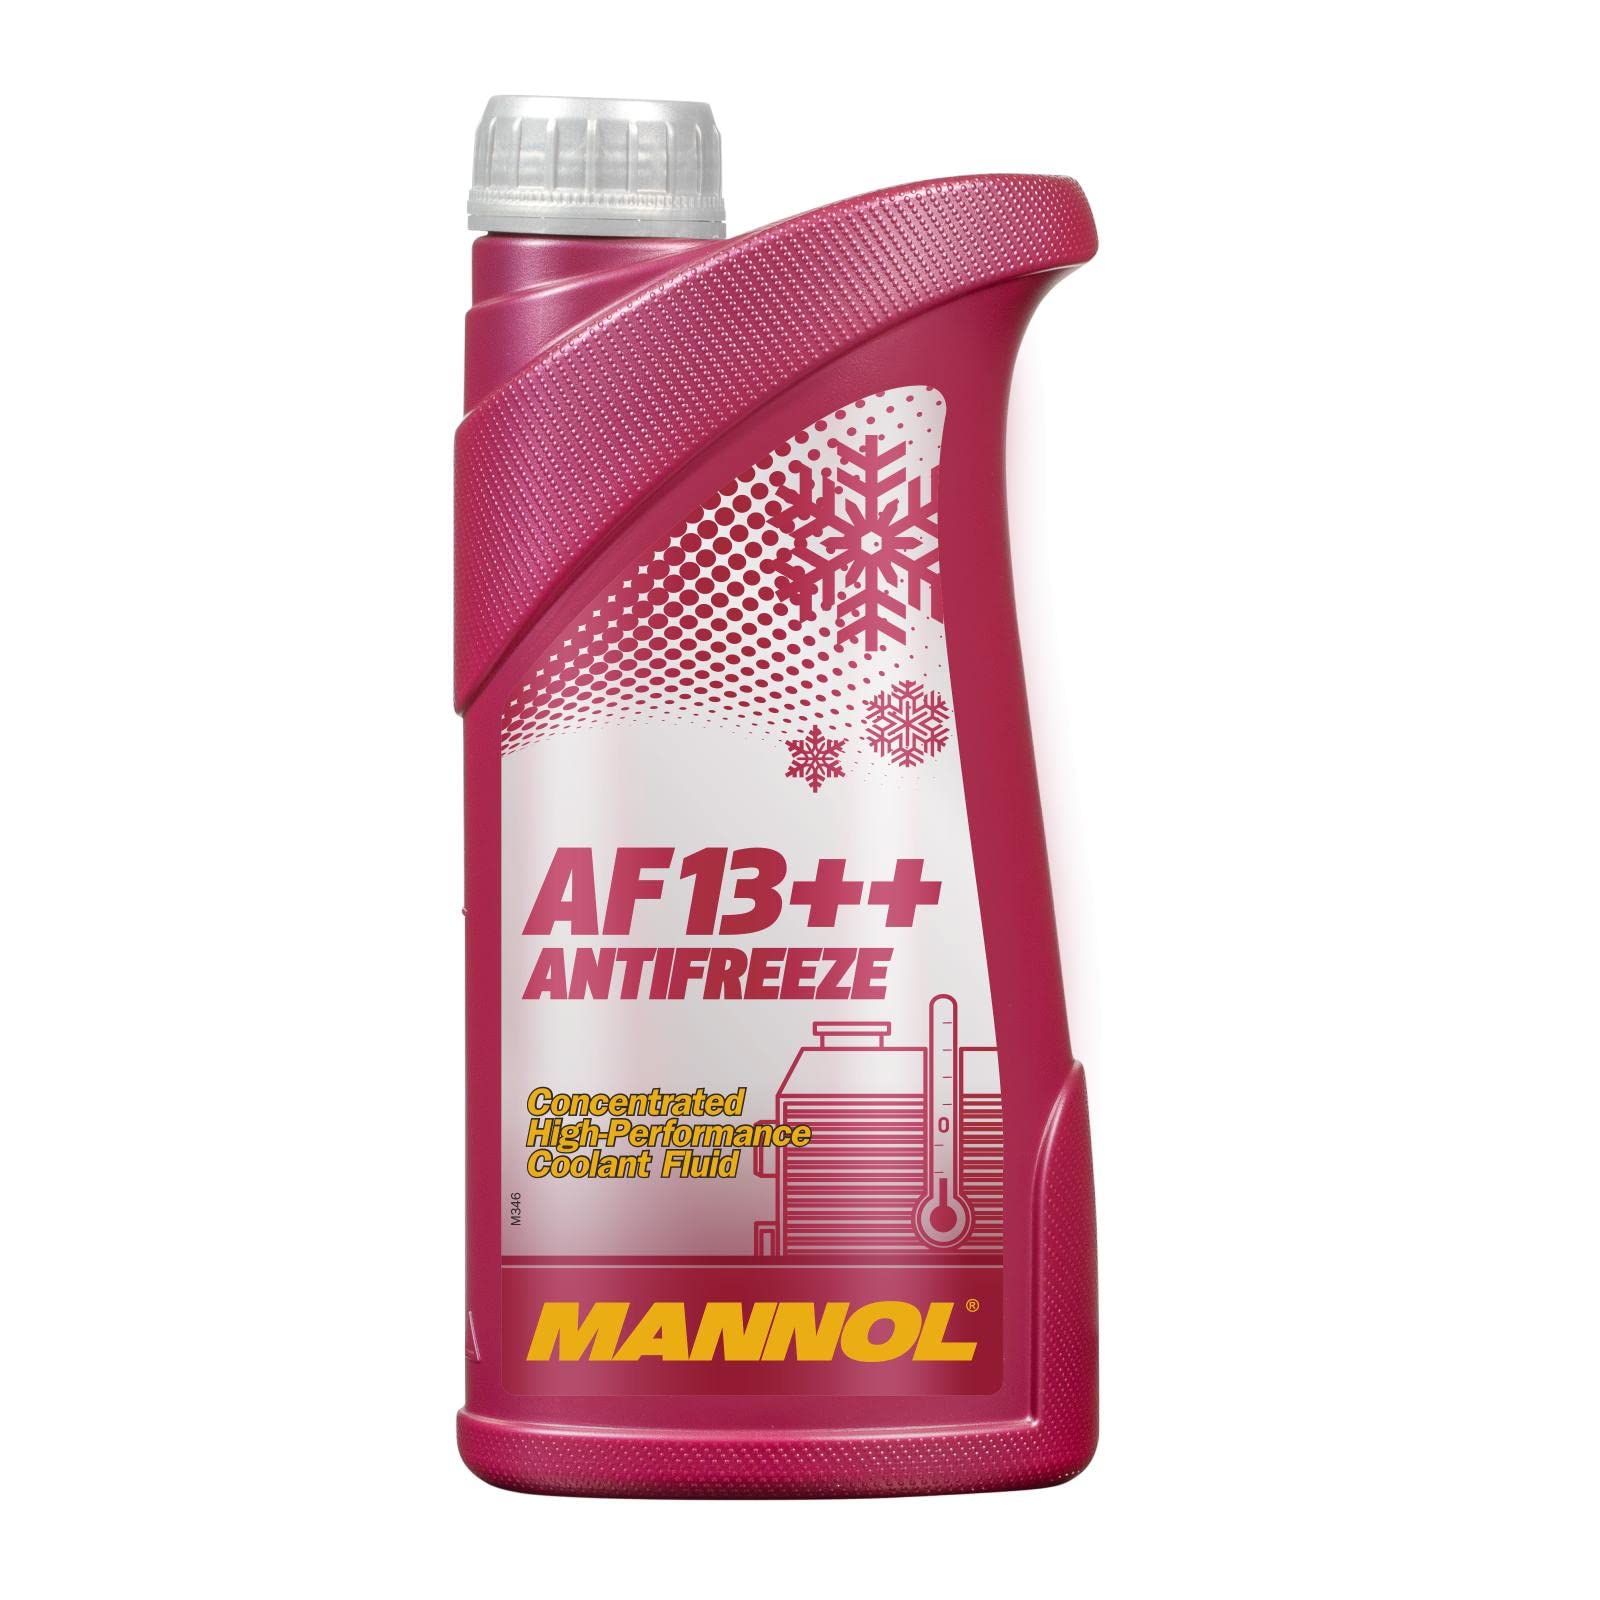 MANNOL AF13++ Antifreeze 1 Liter von MANNOL